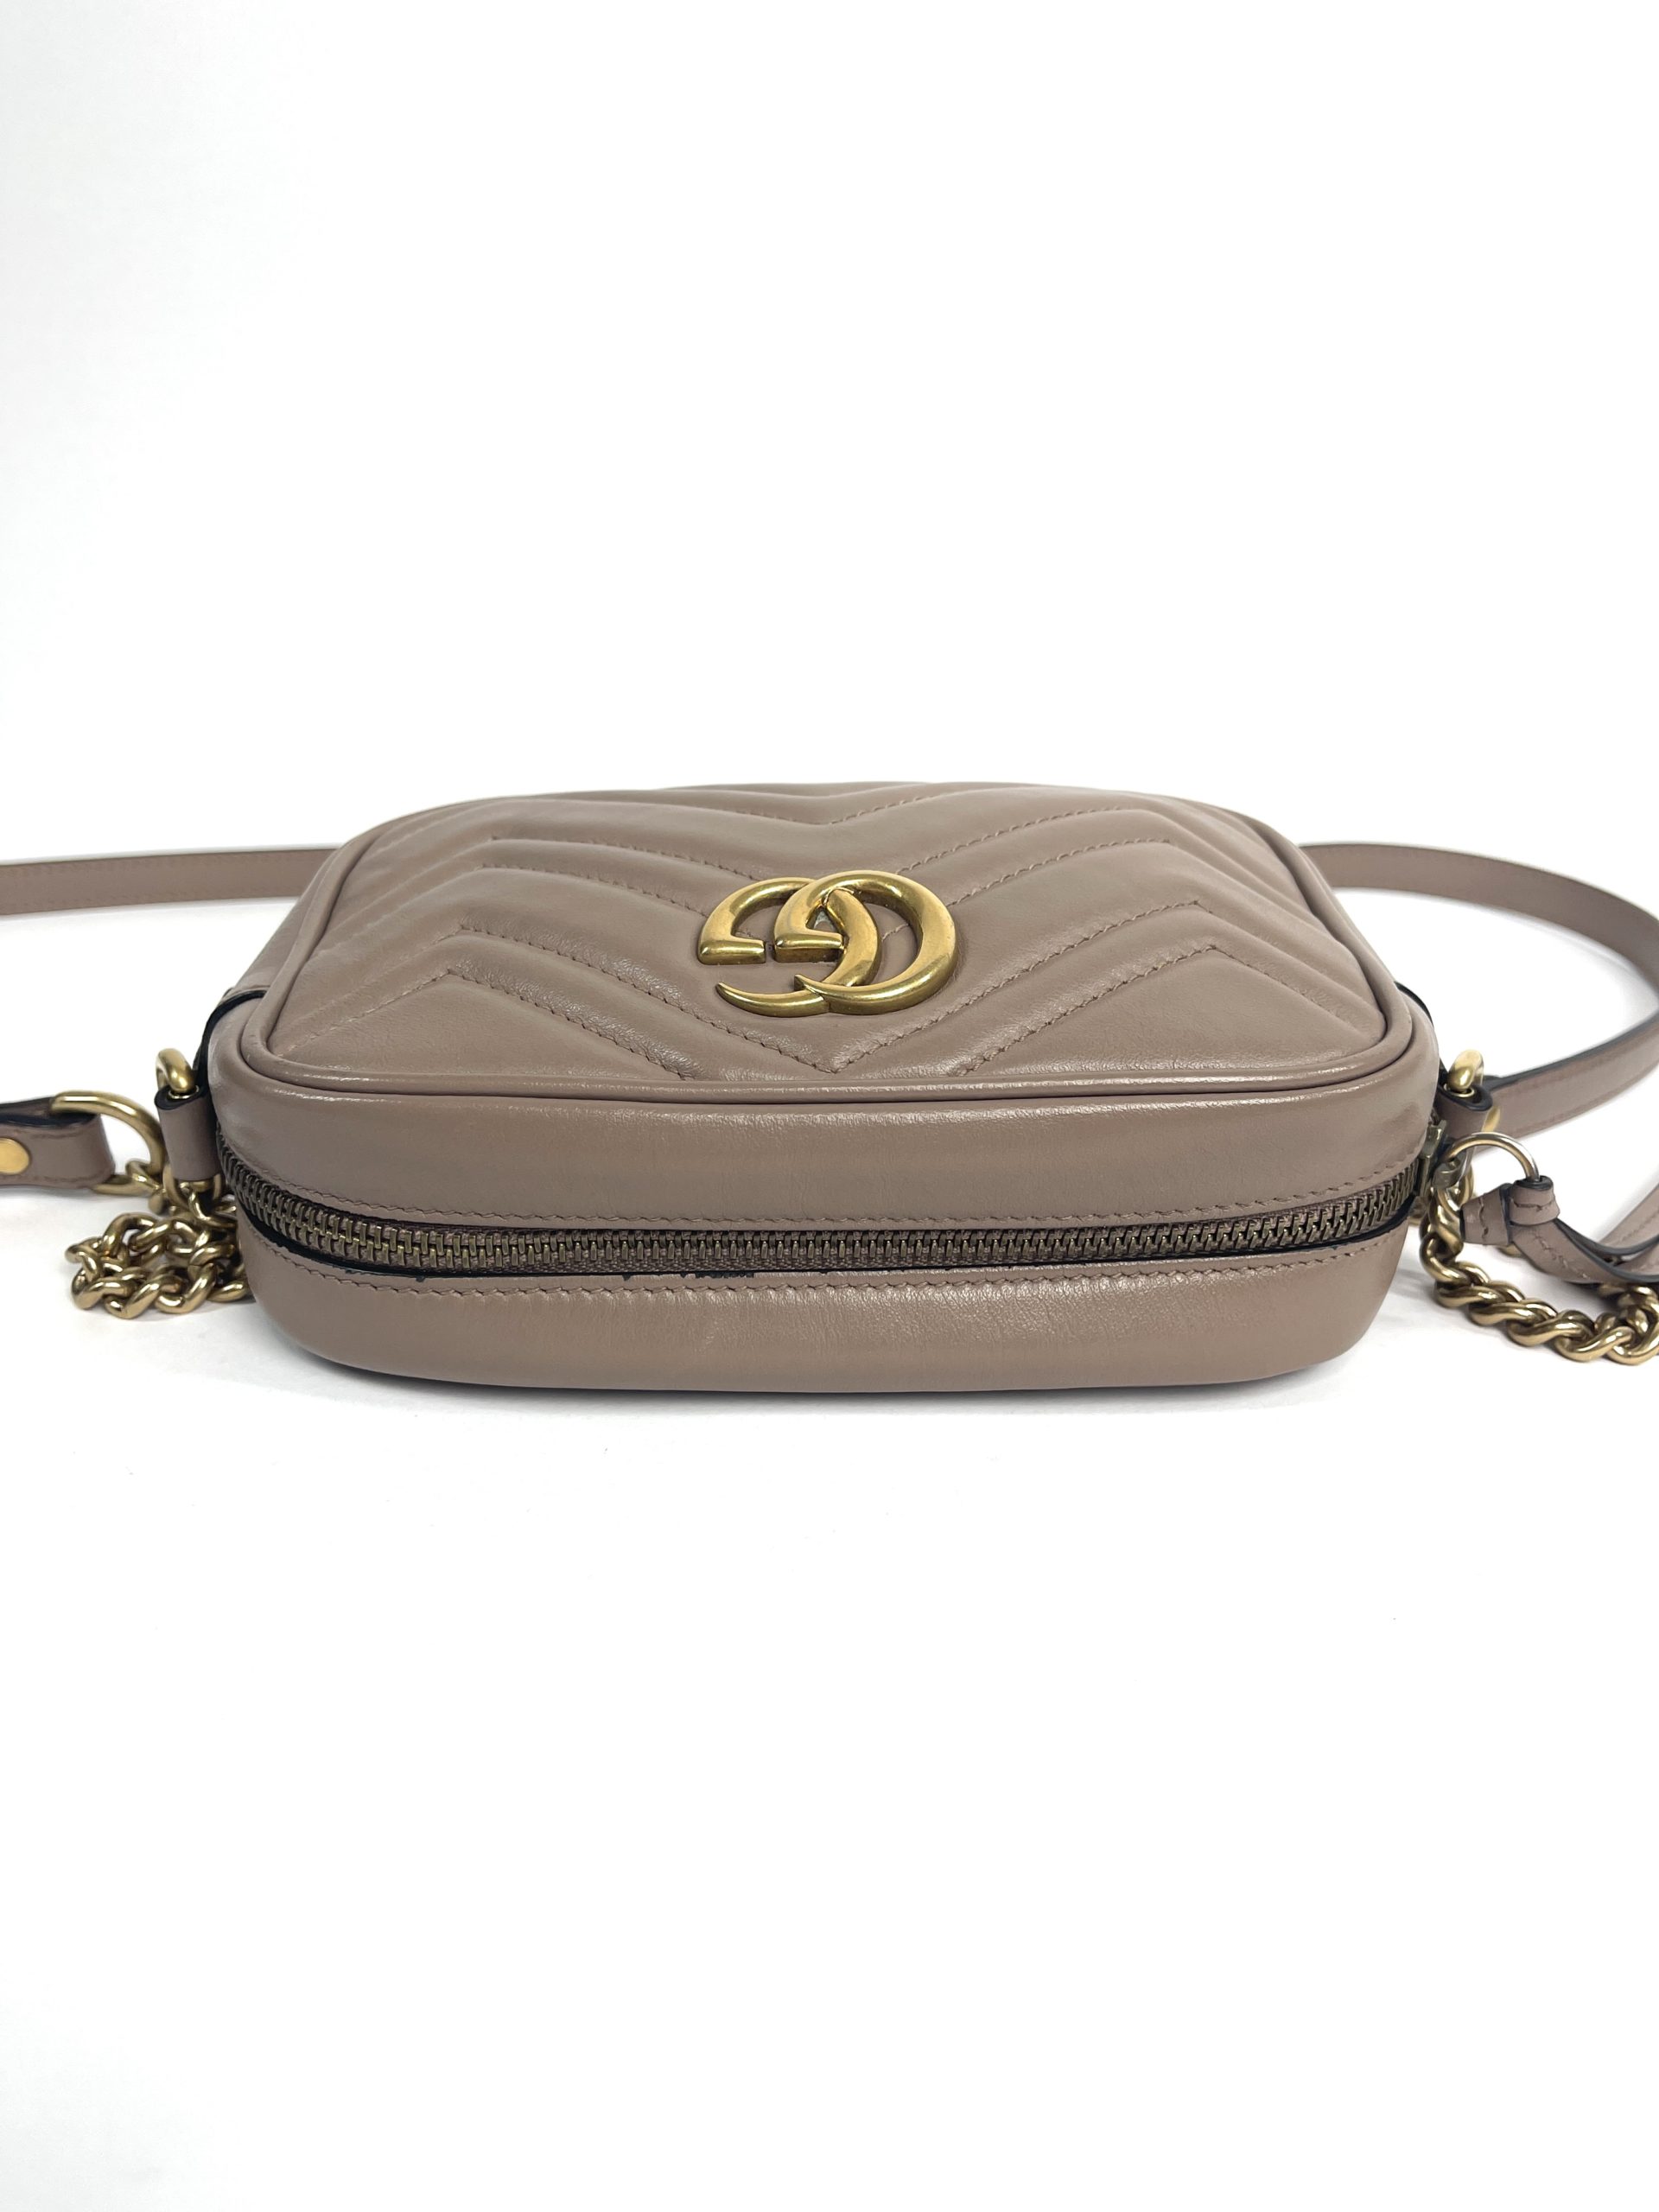 Gucci GG Marmont Mini Camera Bag